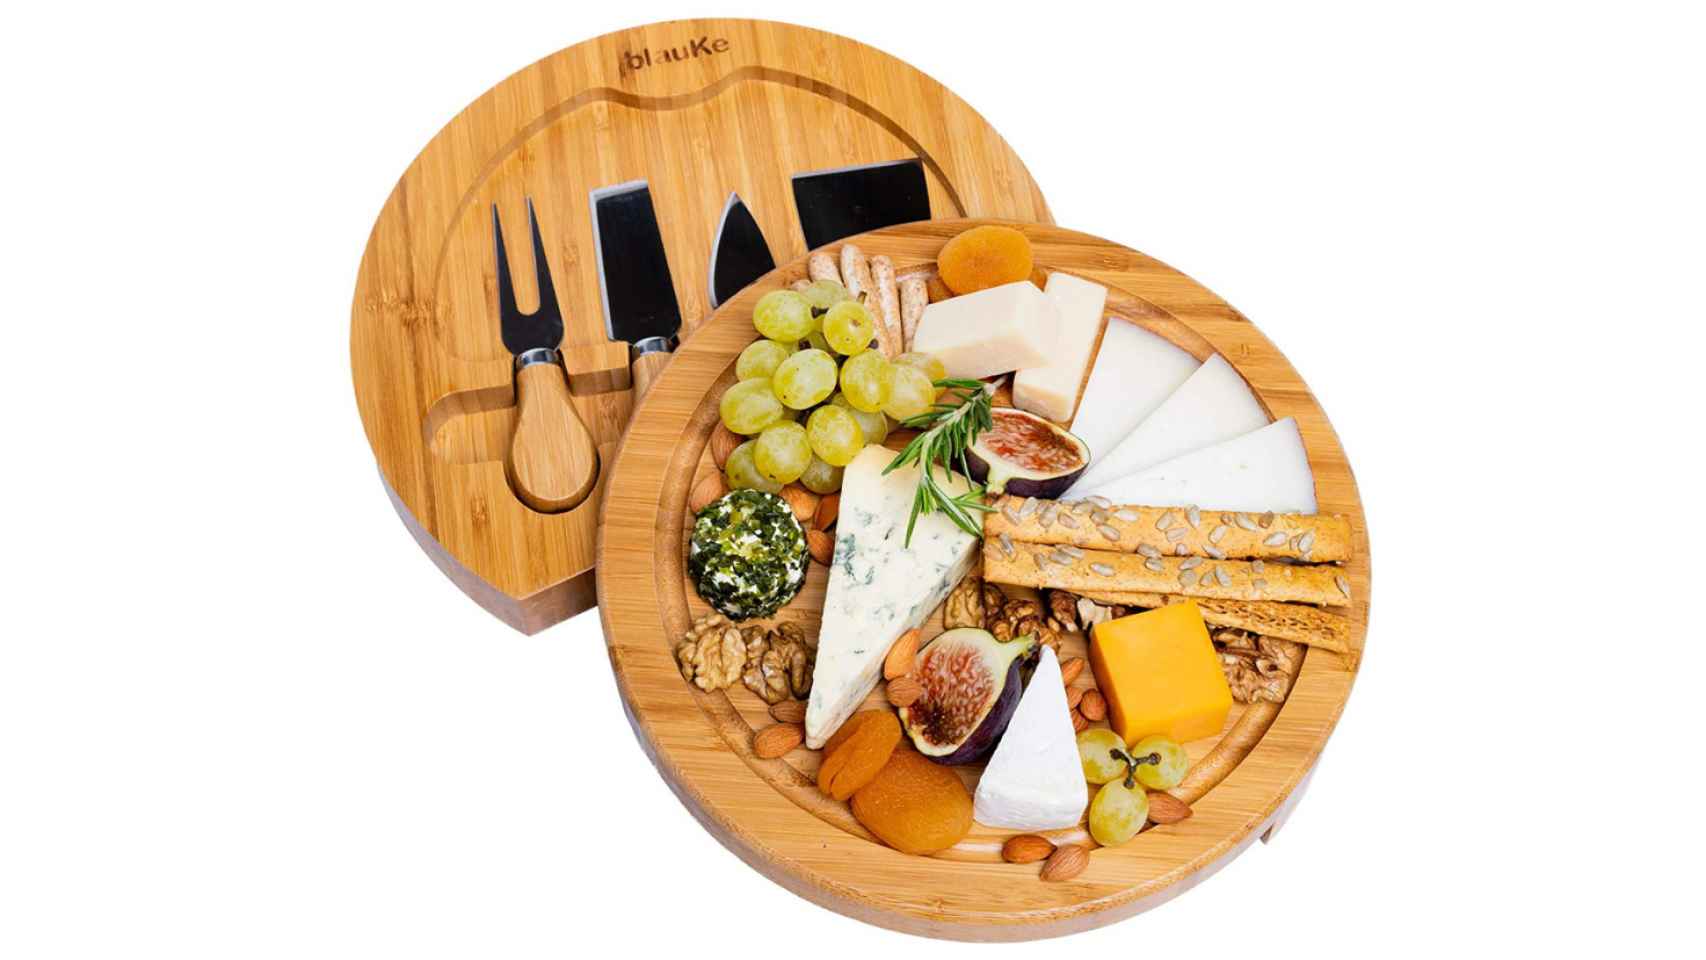 profesional en madera natural / bandejas de queso Prosharp GALERE Tablero de aperitivo Dimensiones: 42 x 26 cm Tapas charcutería 